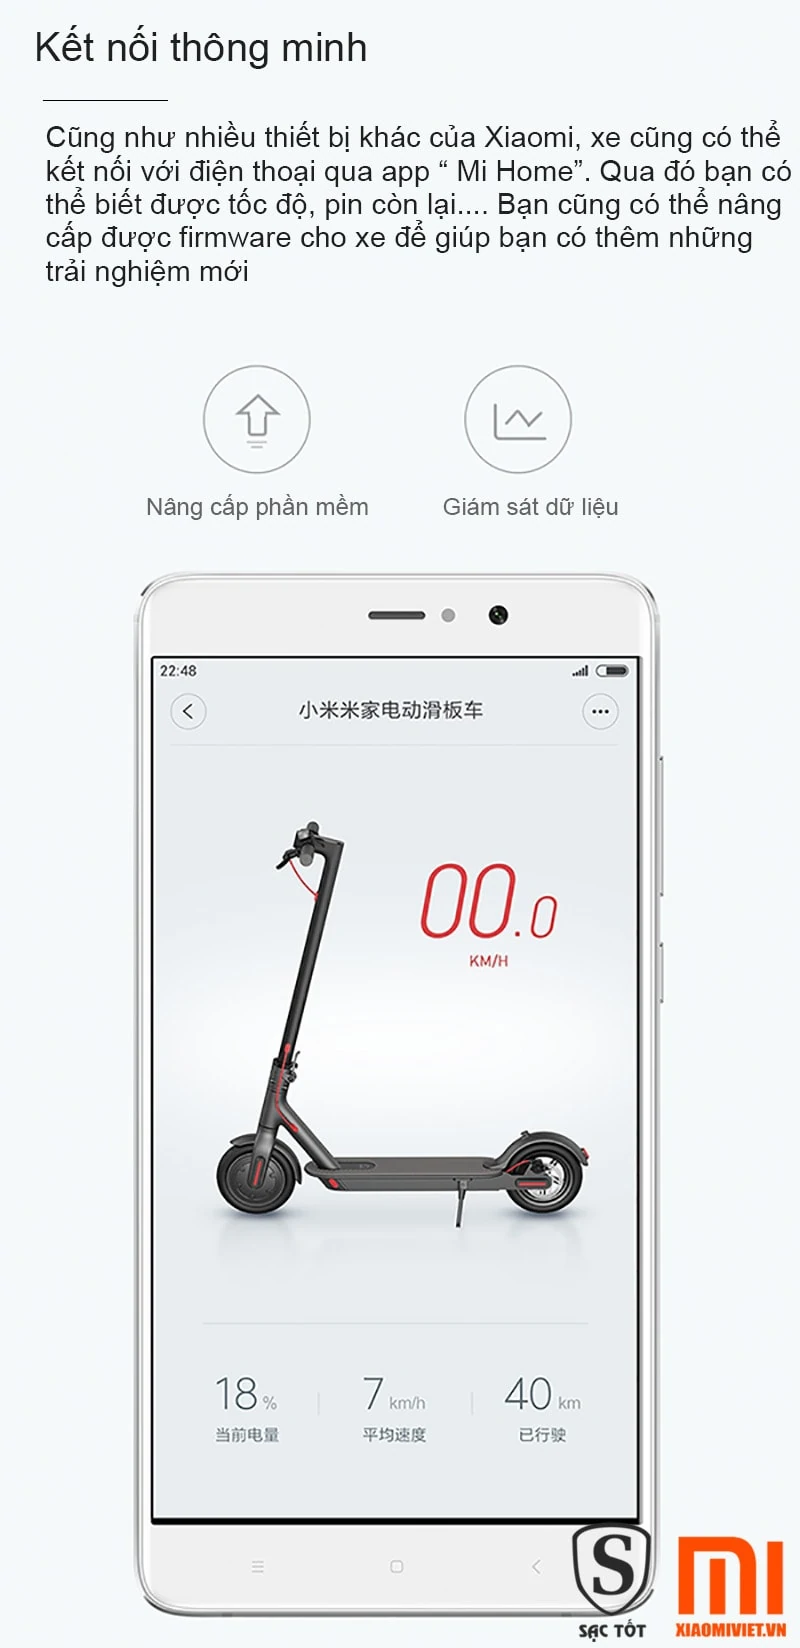 Bộ 4 phụ kiện sửa chữa cho xe scooter điện Xiaomi M365  Shopee Việt Nam